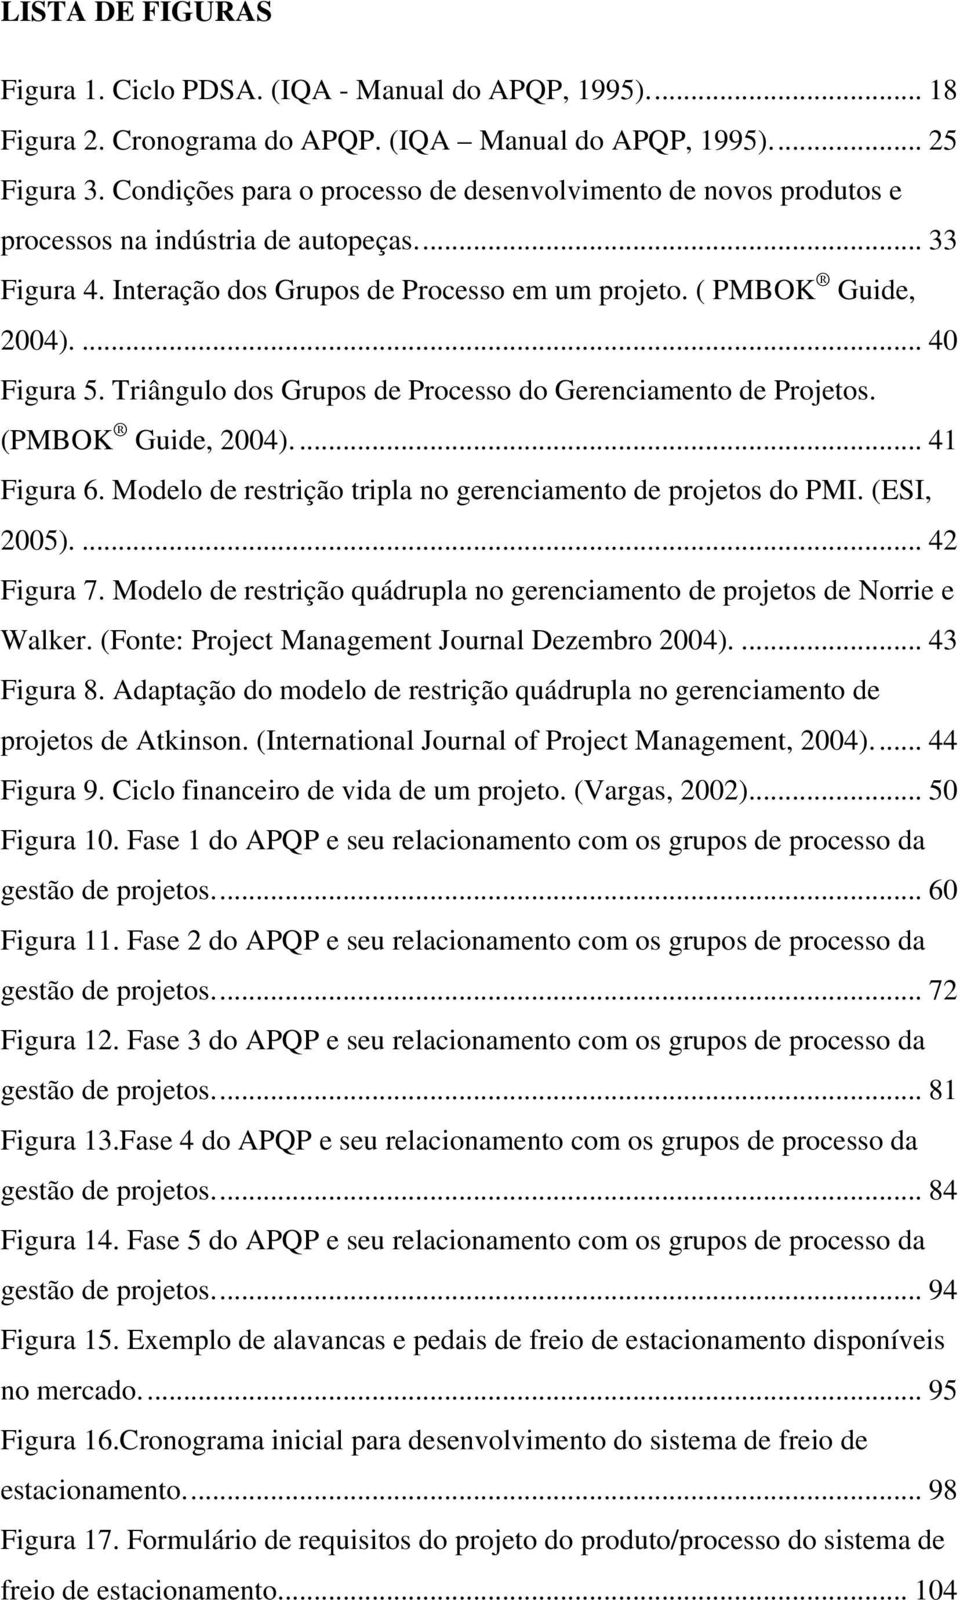 Triângulo dos Grupos de Processo do Gerenciamento de Projetos. (PMBOK Guide, 2004)... 41 Figura 6. Modelo de restrição tripla no gerenciamento de projetos do PMI. (ESI, 2005).... 42 Figura 7.